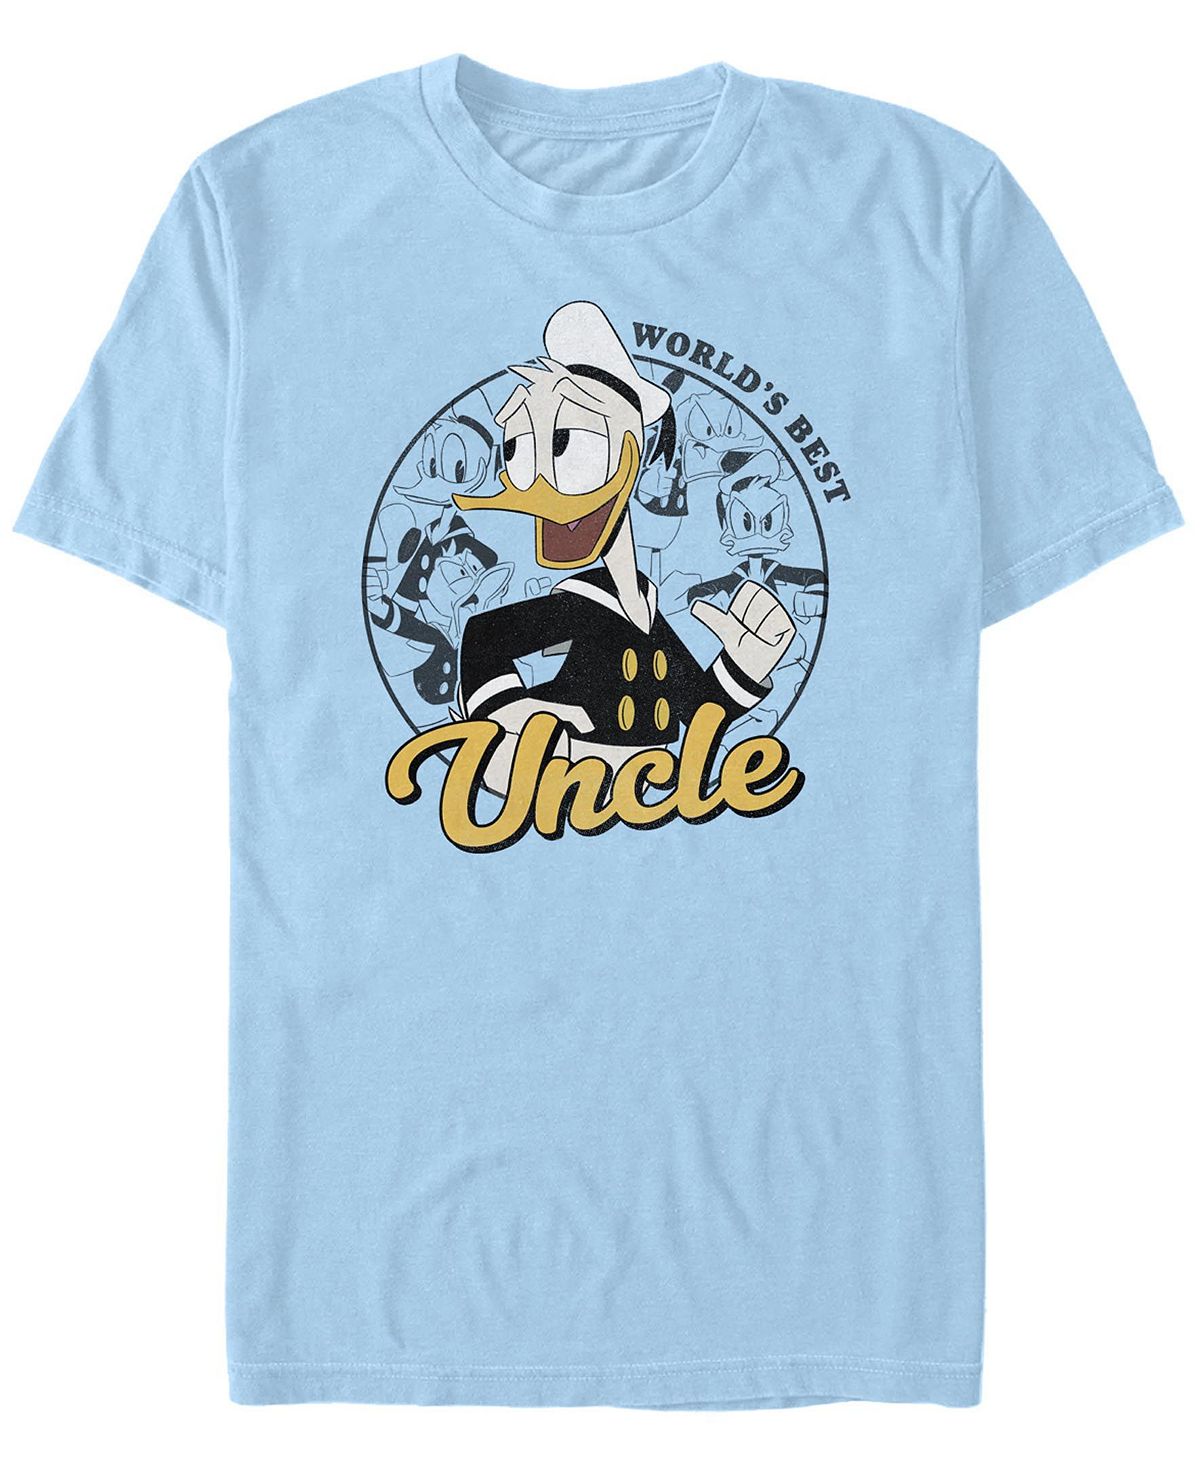 Мужская футболка с короткими рукавами «утиные истории» дональда дака «дядя» Fifth Sun, светло-синий